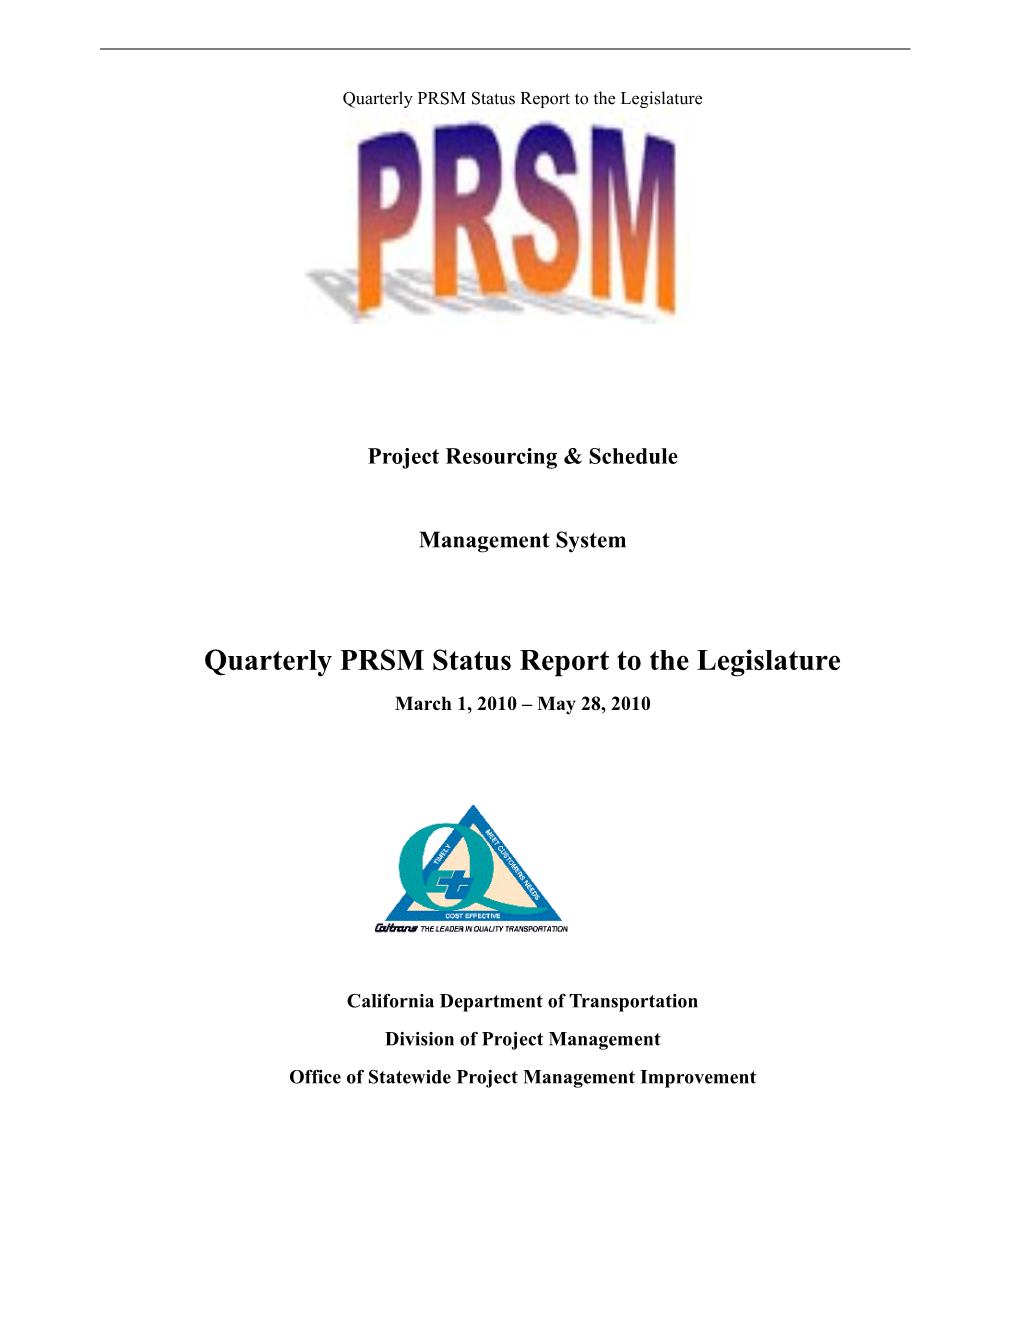 Quarterly Status Report to the Legislature s1